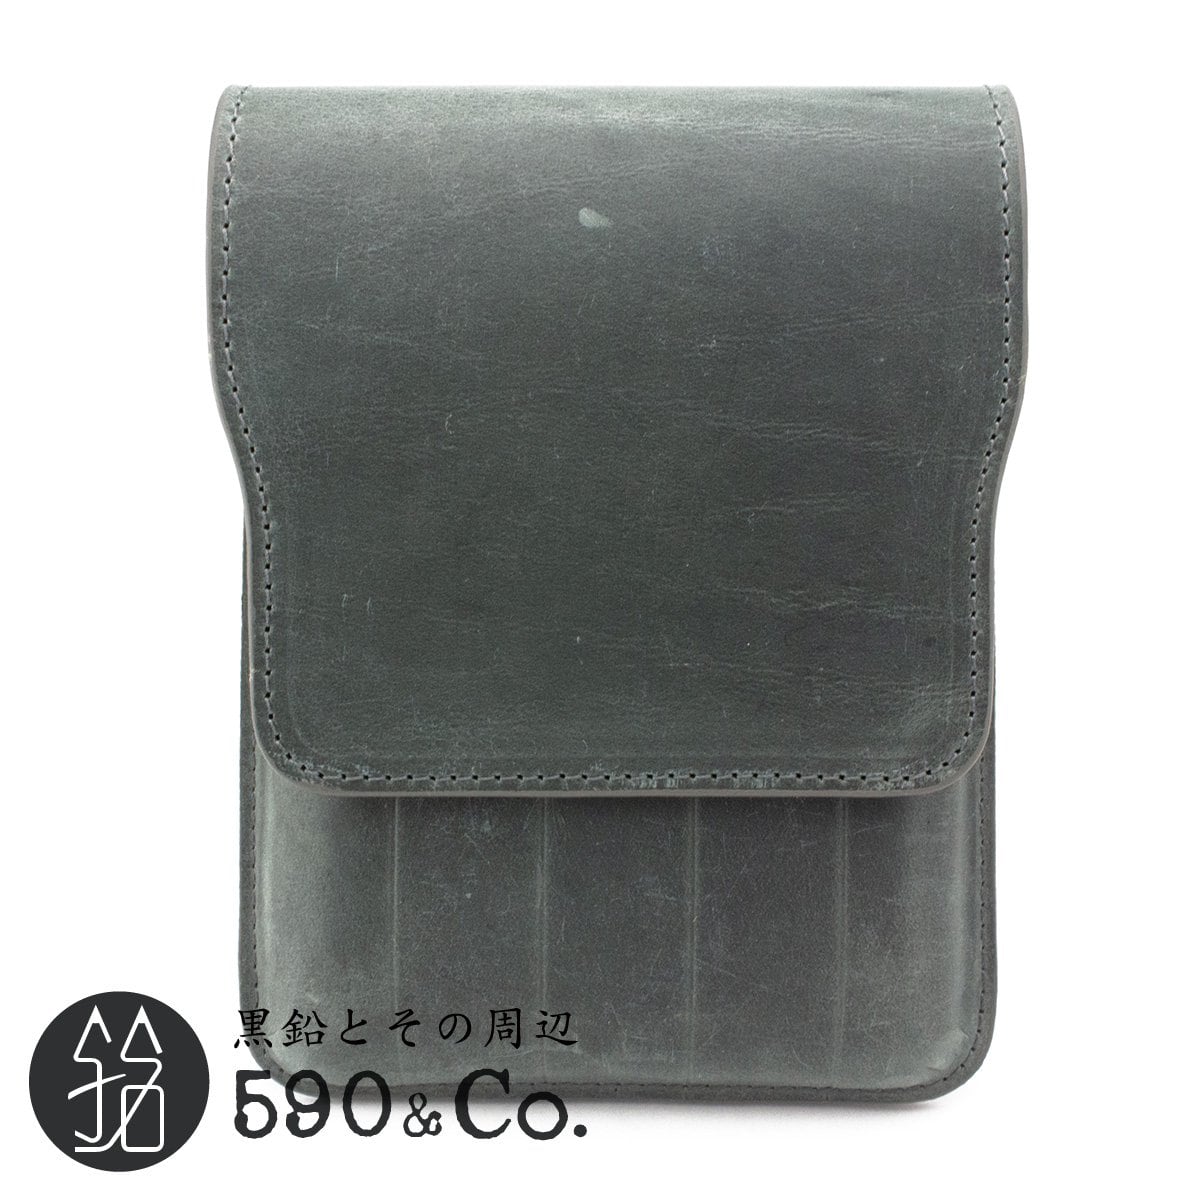 Galen Leather/ガレンレザー】フラップペンケース・5本用 (クレイジーホーススモーク) 590Co.